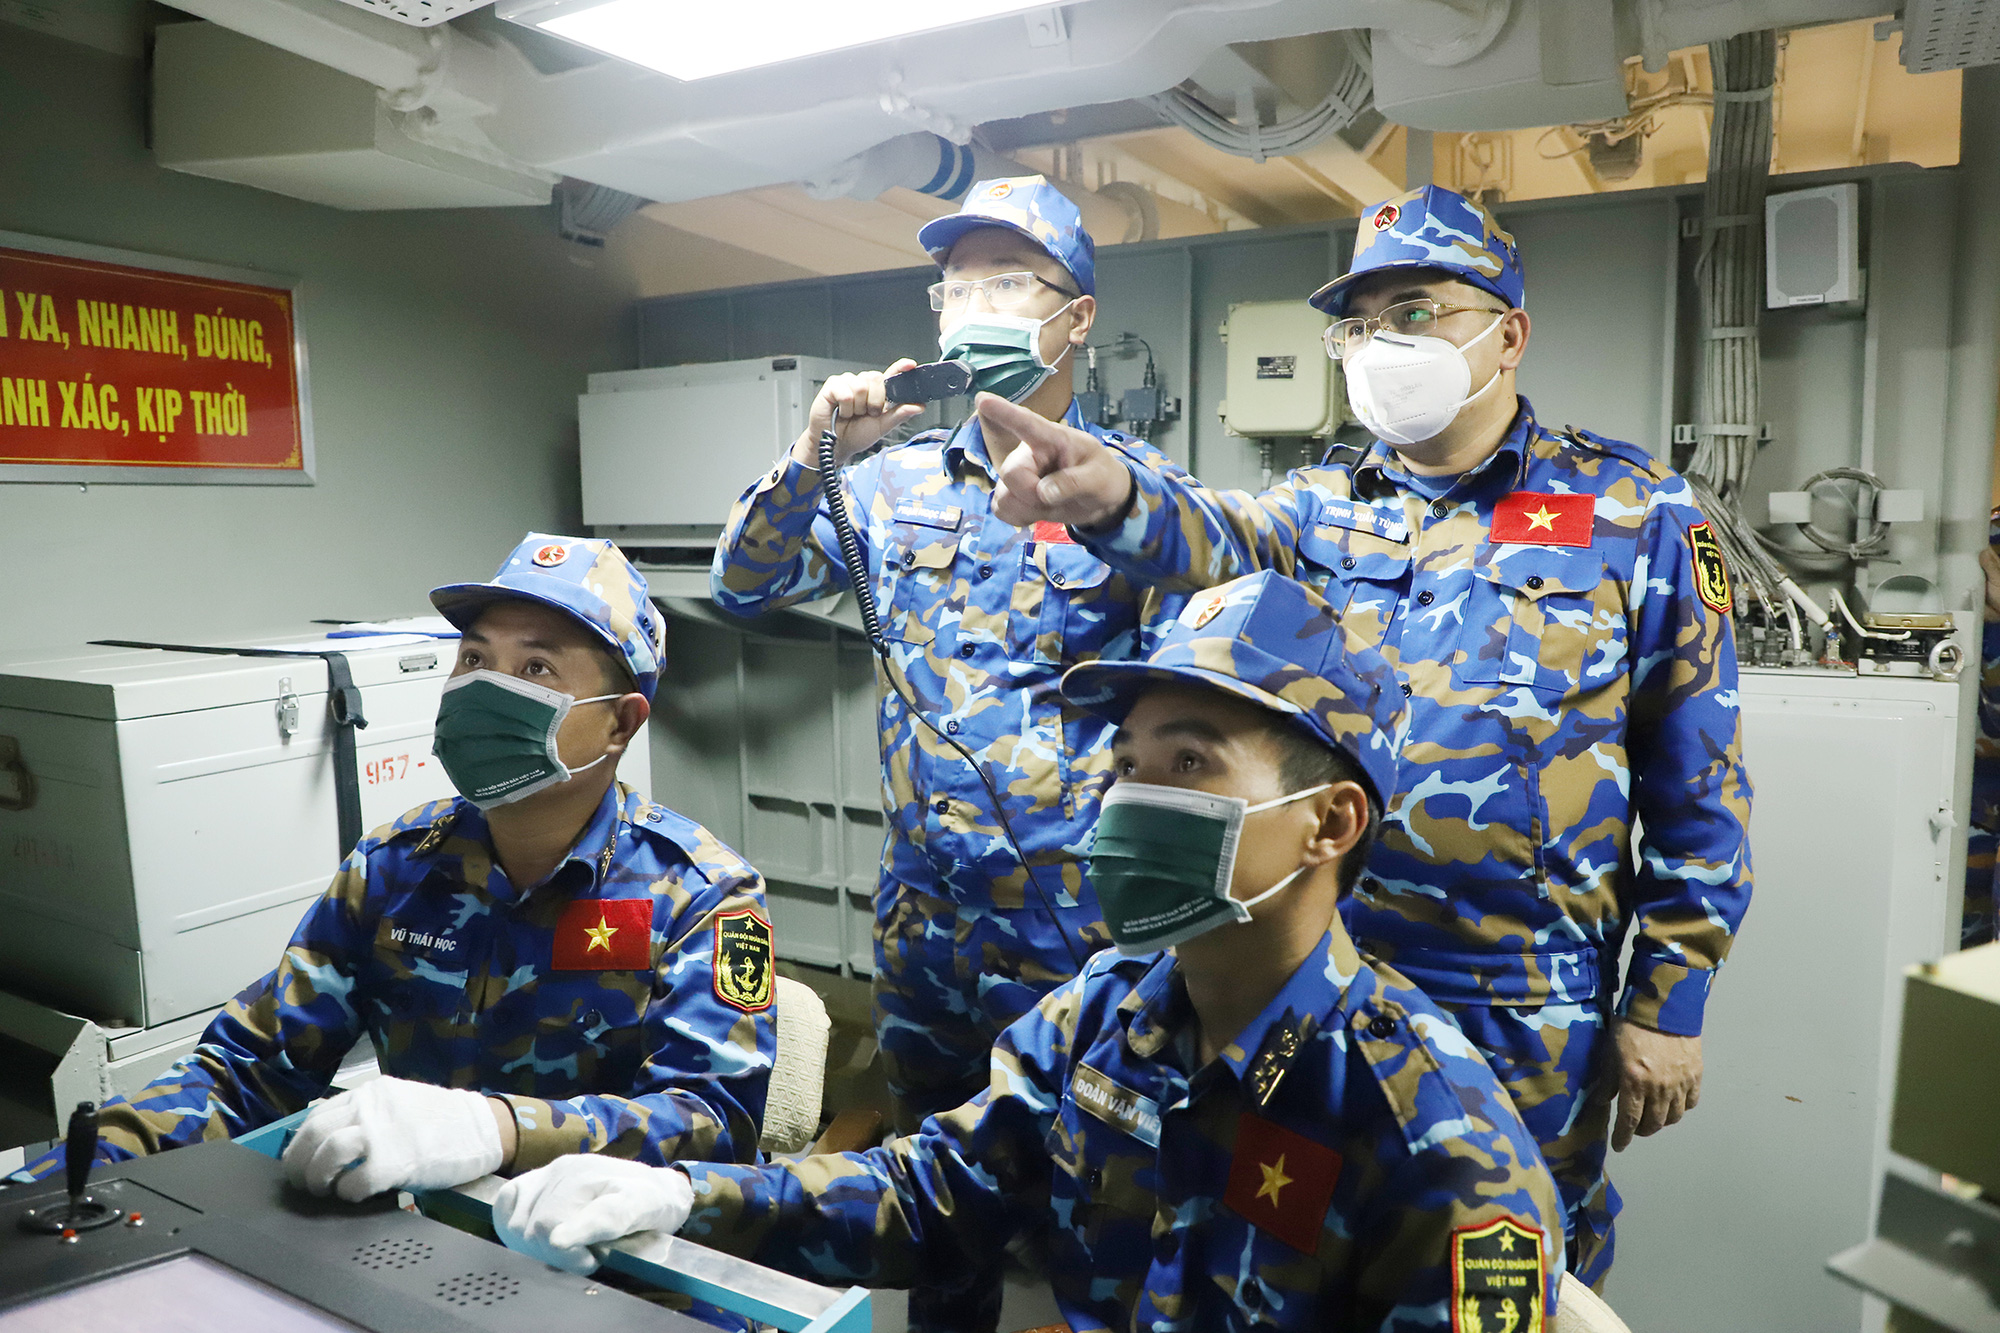 Tàu Hải quân Quang Trung ra khơi, bắn hạ mục tiêu tại Army Games 2021 - Ảnh 2.